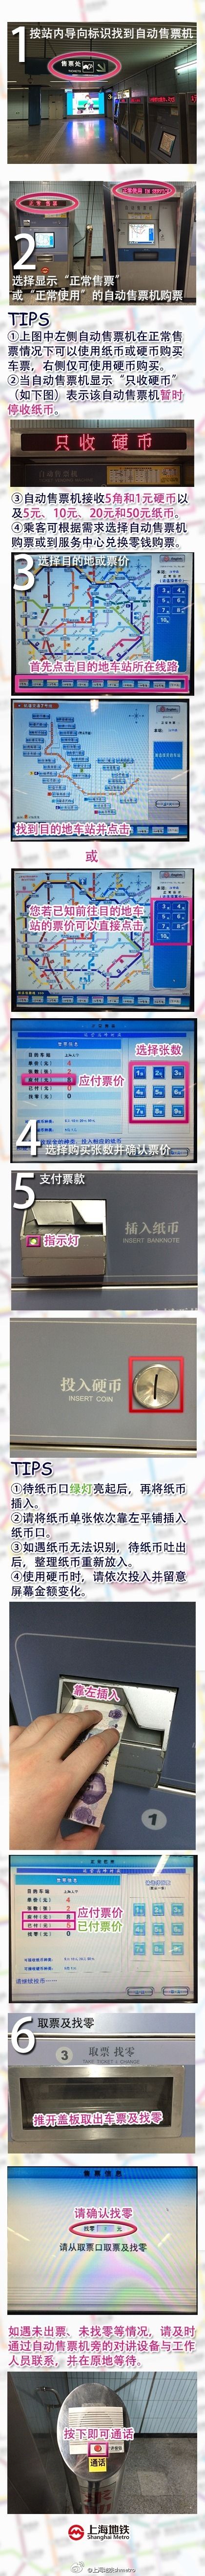 ·地铁中的自动售票机怎么使用说一下具体步骤，上海地铁自动售票机使用指南-第1张